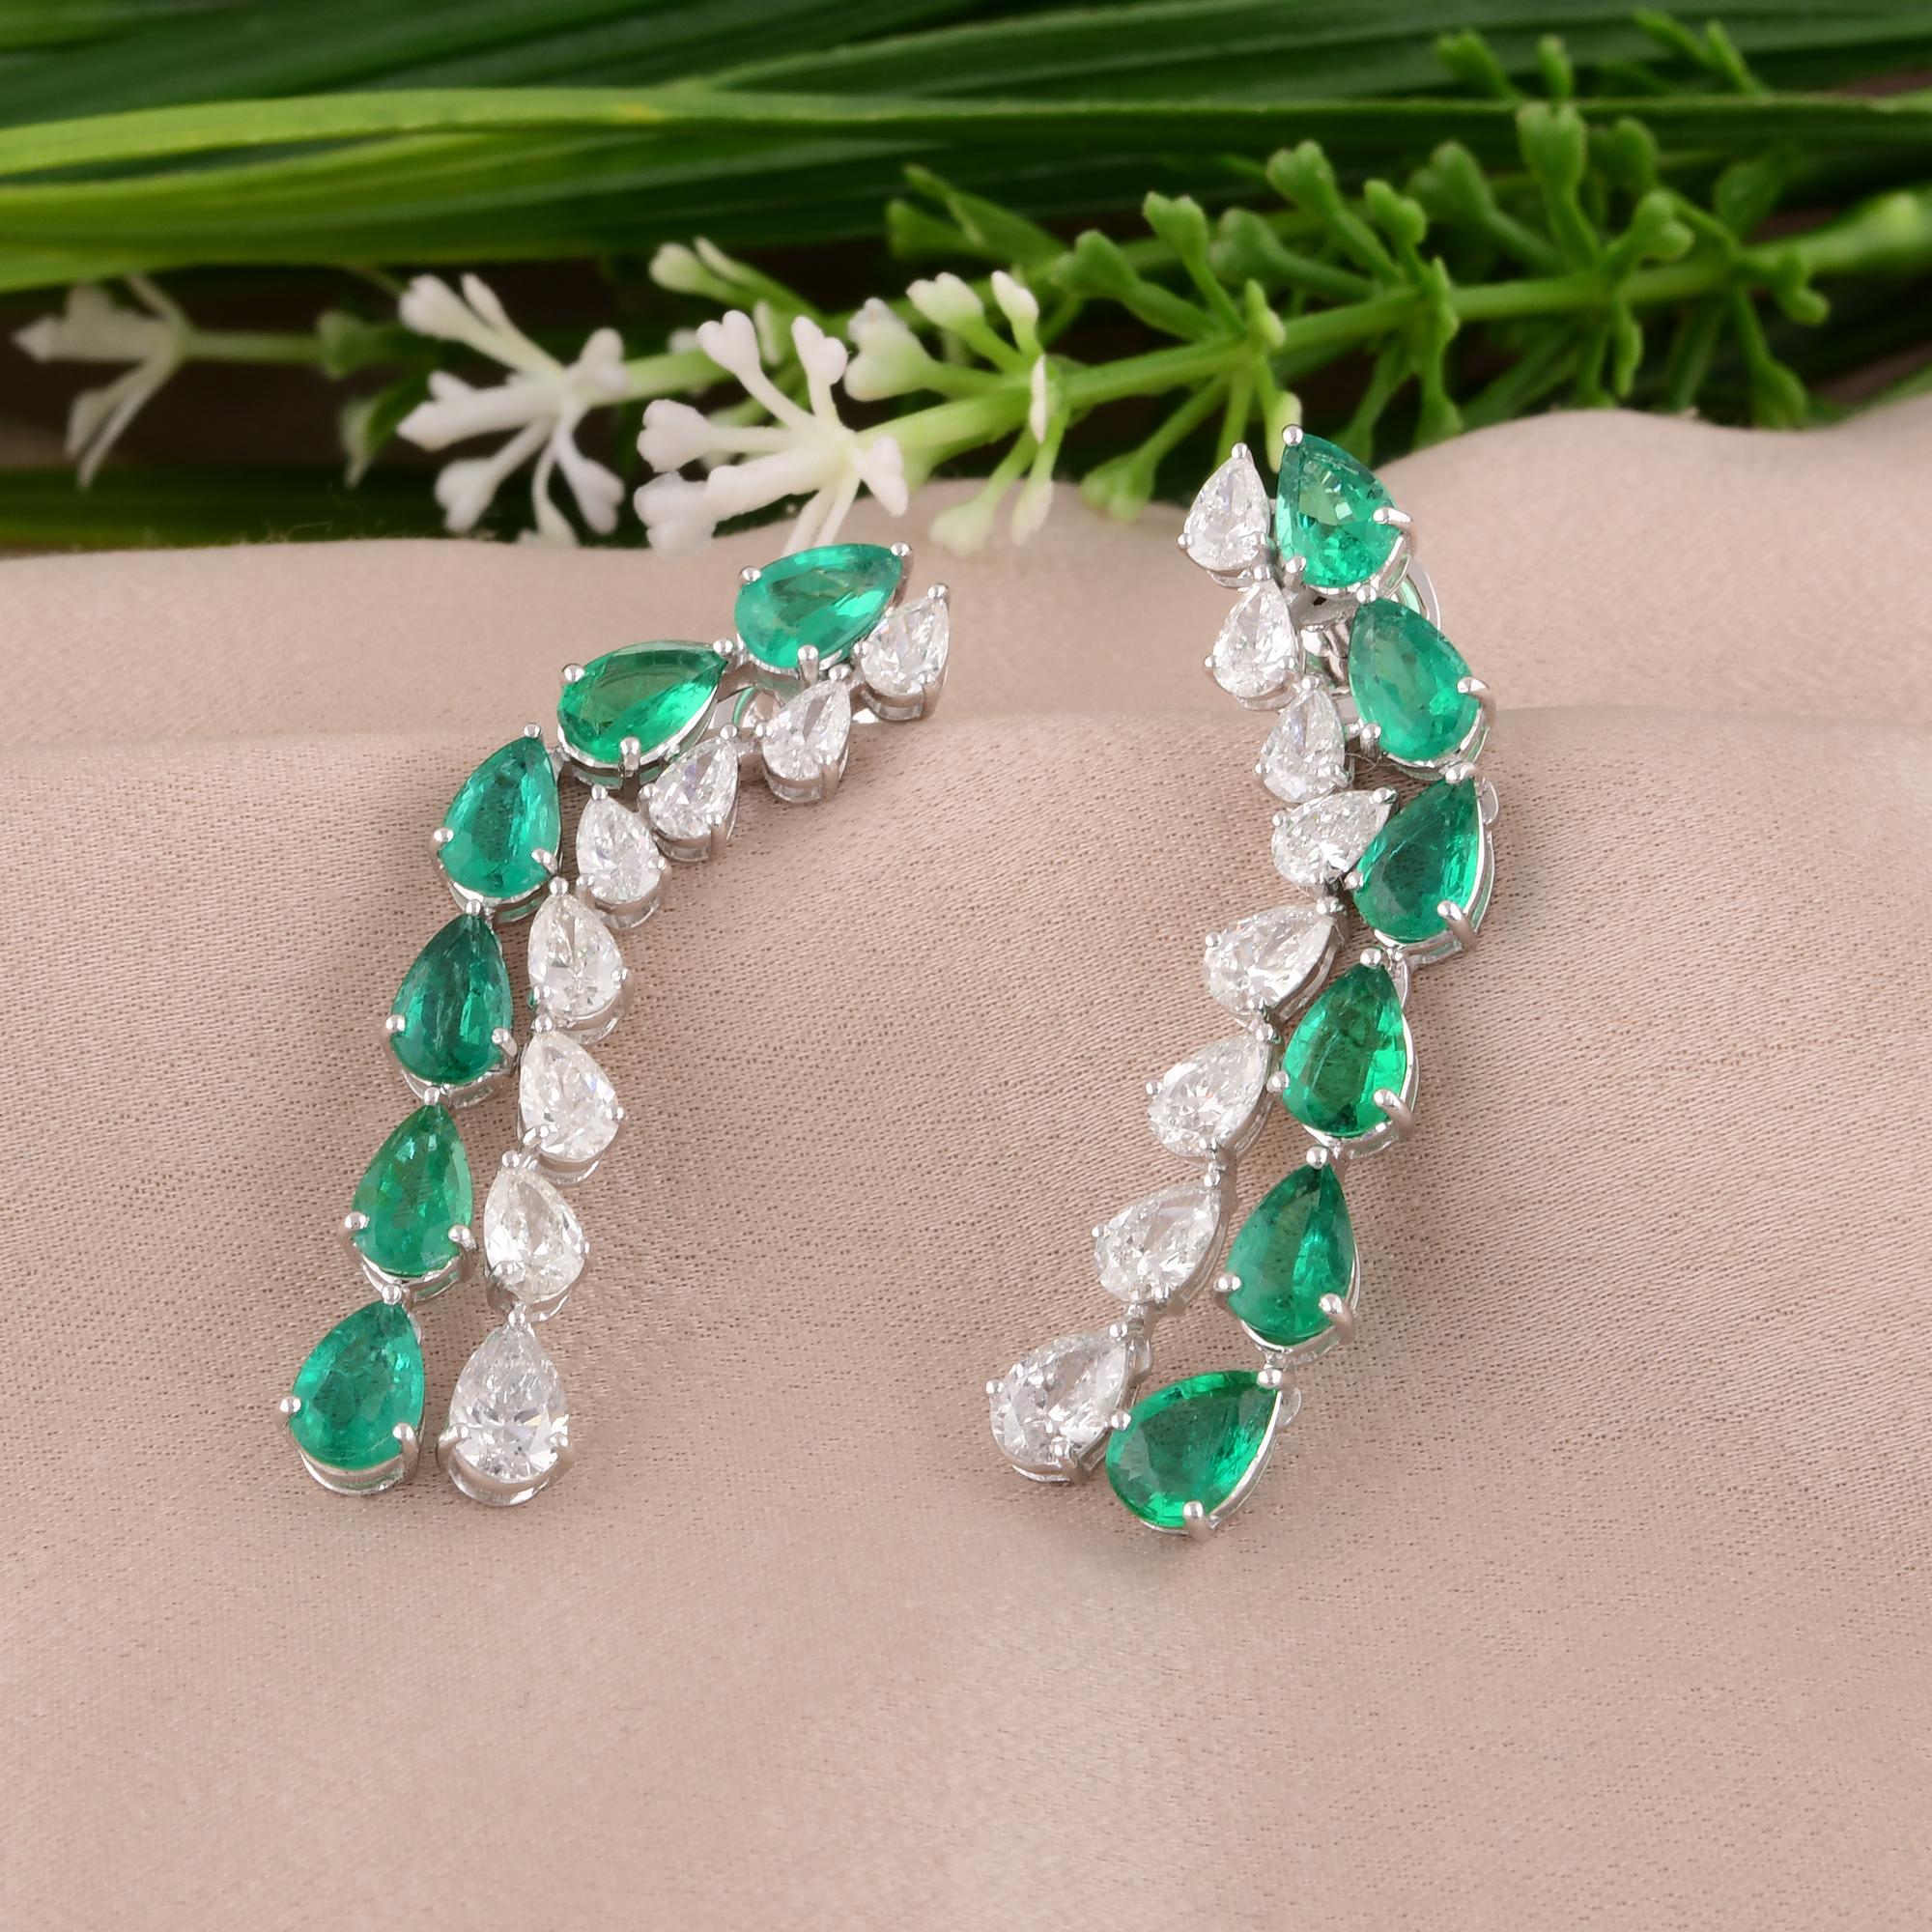 Pear Cut Pear Zambian Emerald Gemstone Earrings Diamond 18 Karat White Gold Fine Jewelry For Sale